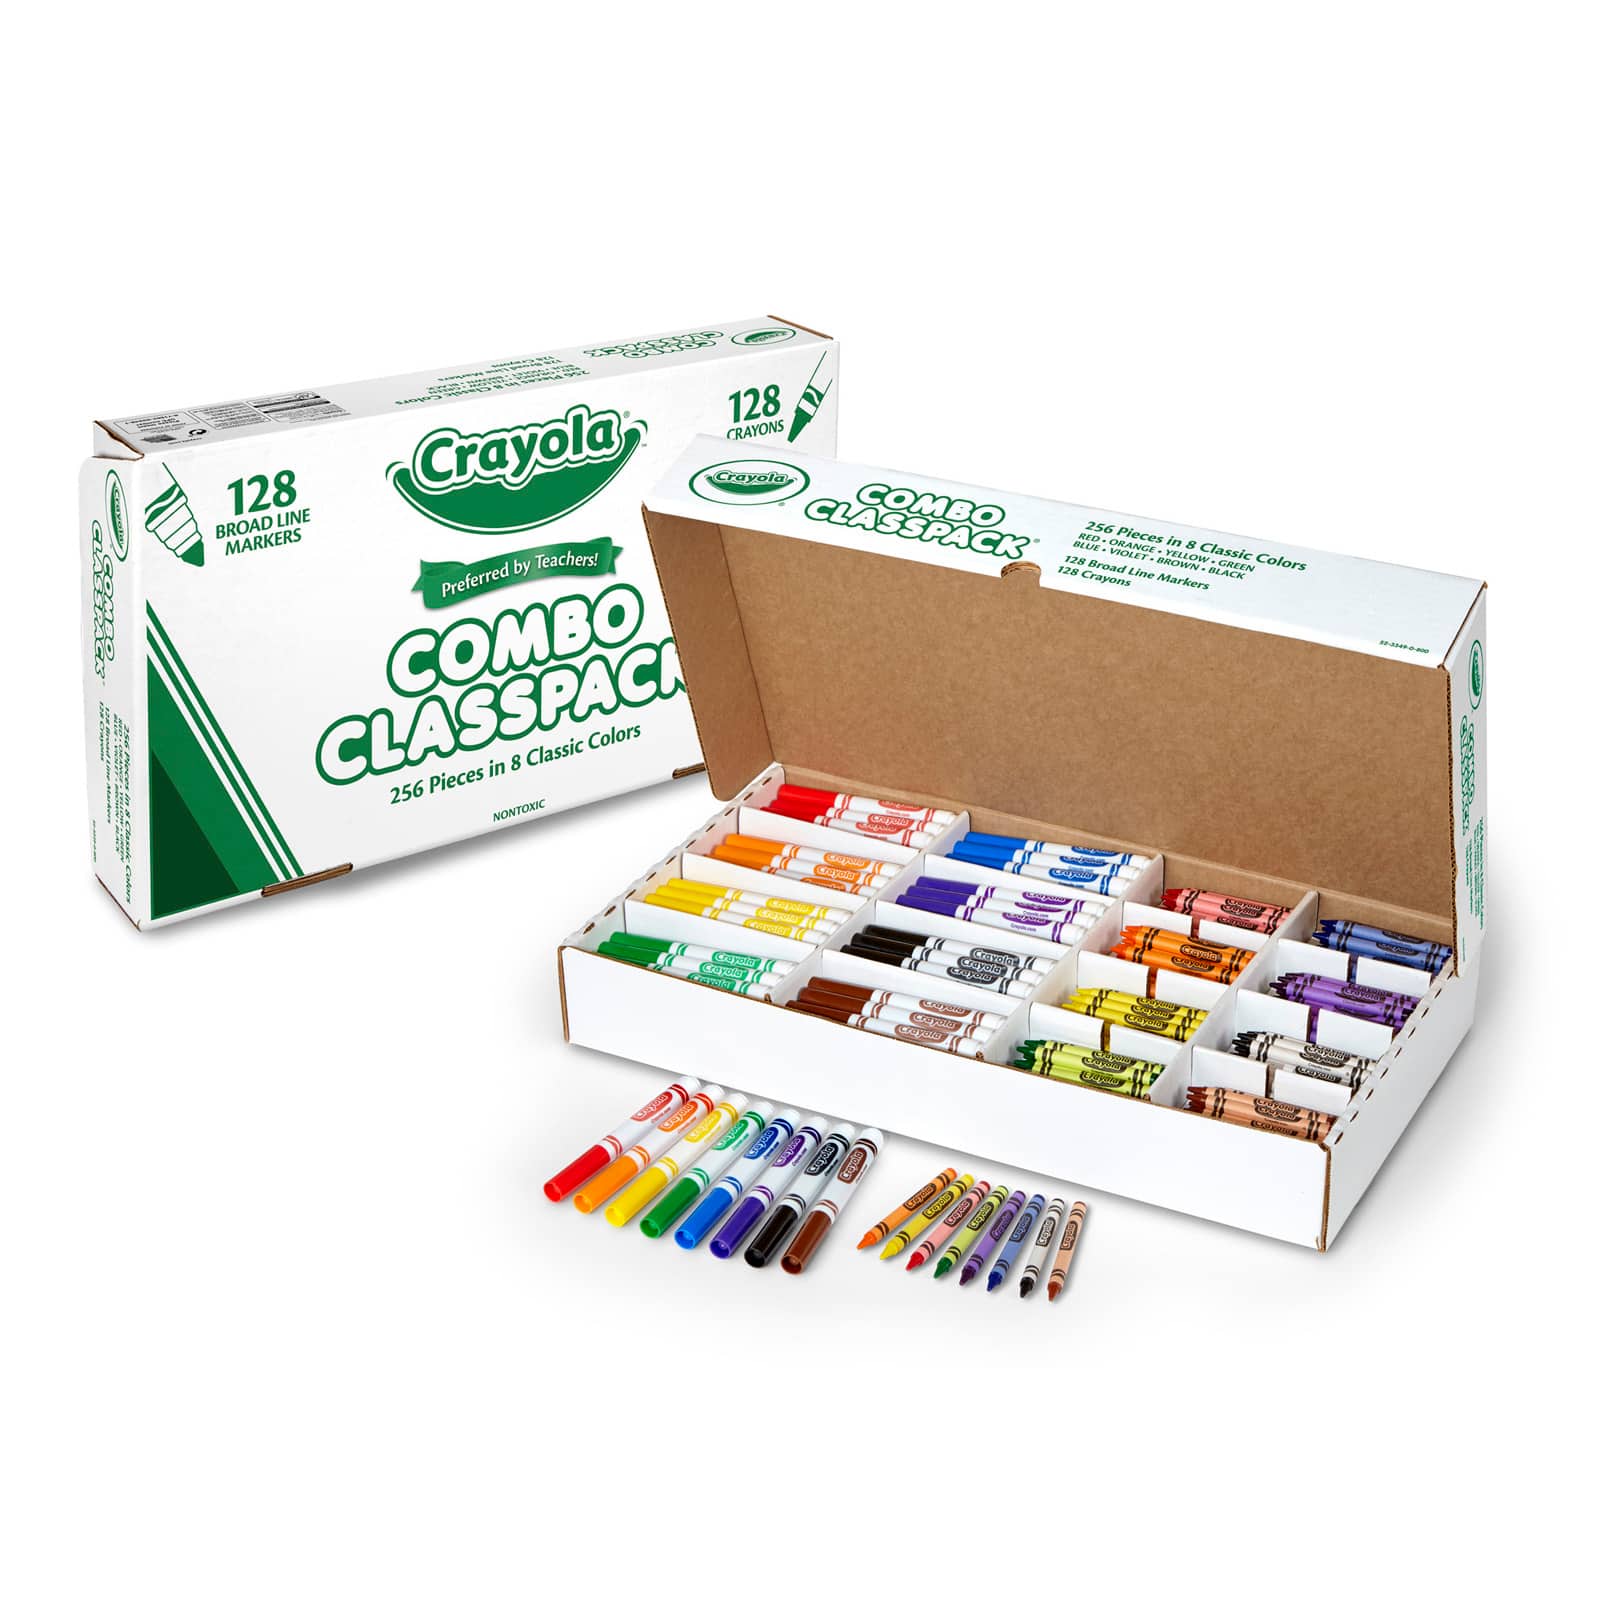 Classpack & Bulk Art Supplies, Classroom Supplies